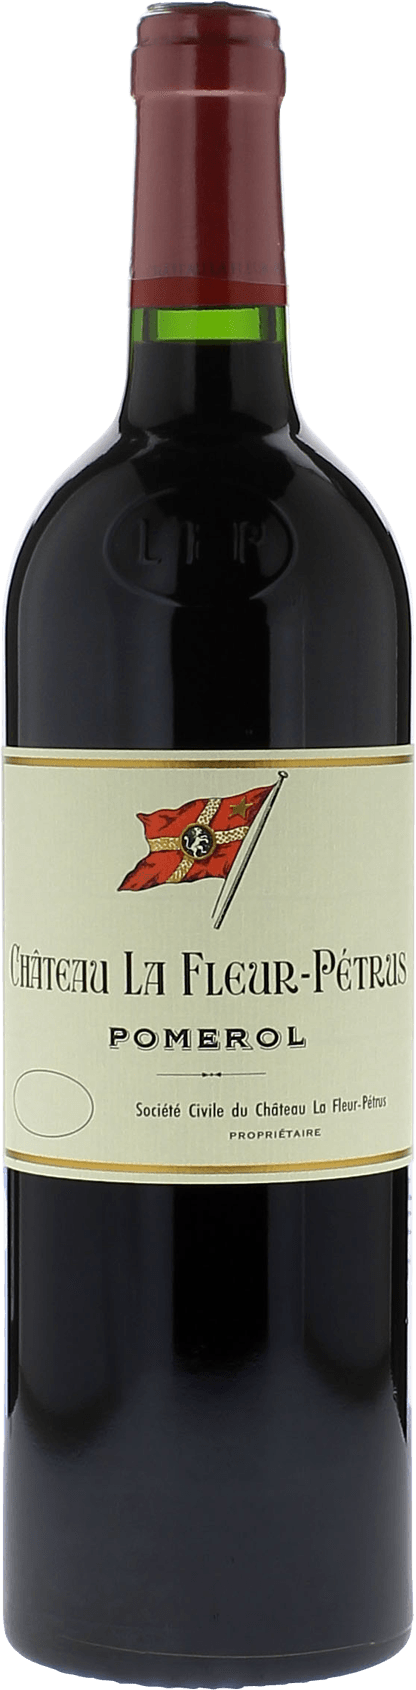 La fleur petrus 1989  Pomerol, Bordeaux rouge